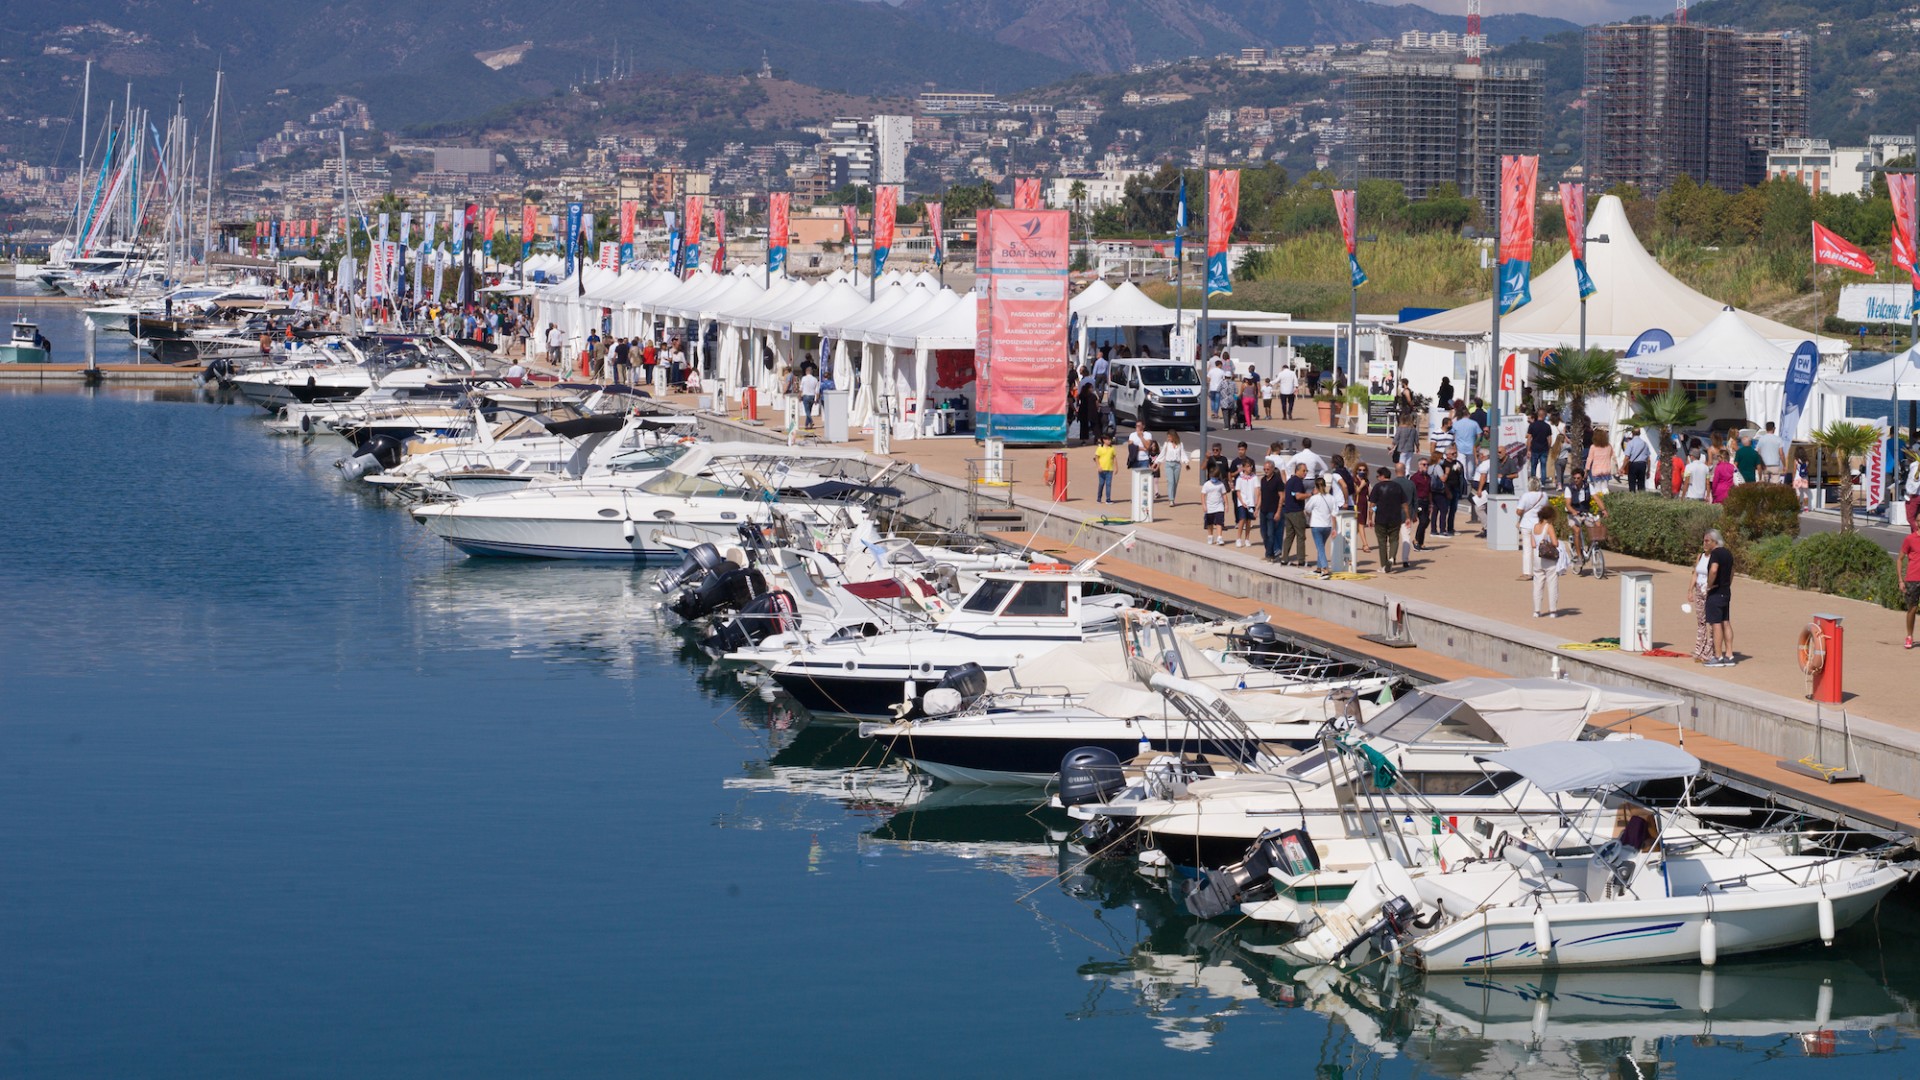 6° Salerno Boat Show a Marina d'Arechi dal 5 al 13 novembre